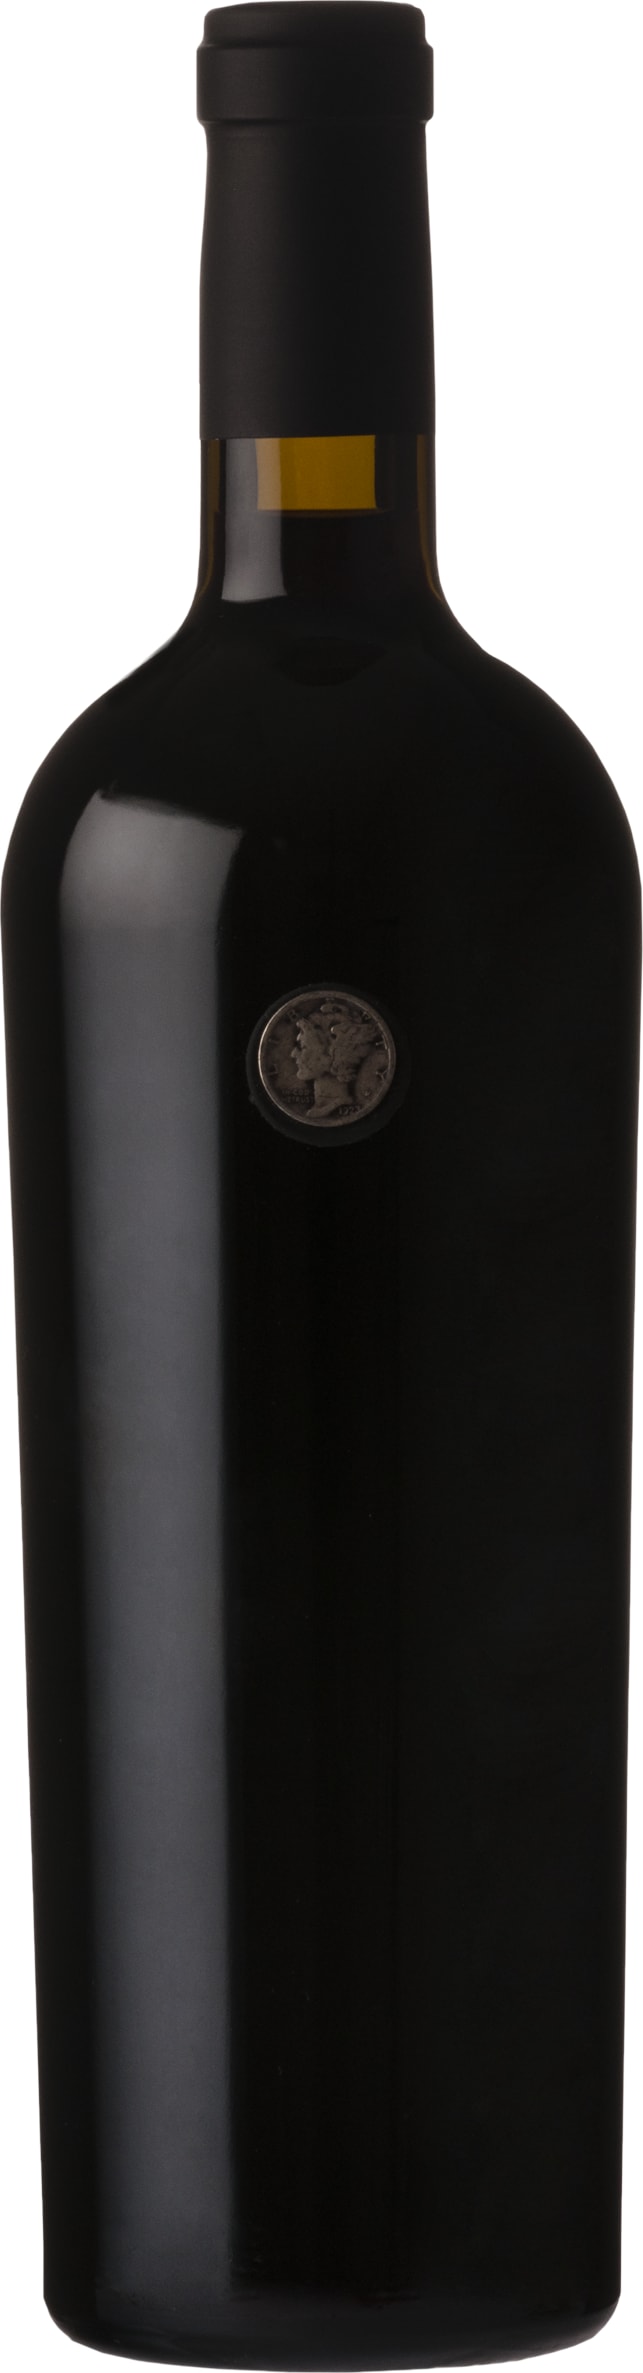 Orin Swift Mercury Head 2021 75cl - Buy Orin Swift Wines from GREAT WINES DIRECT wine shop